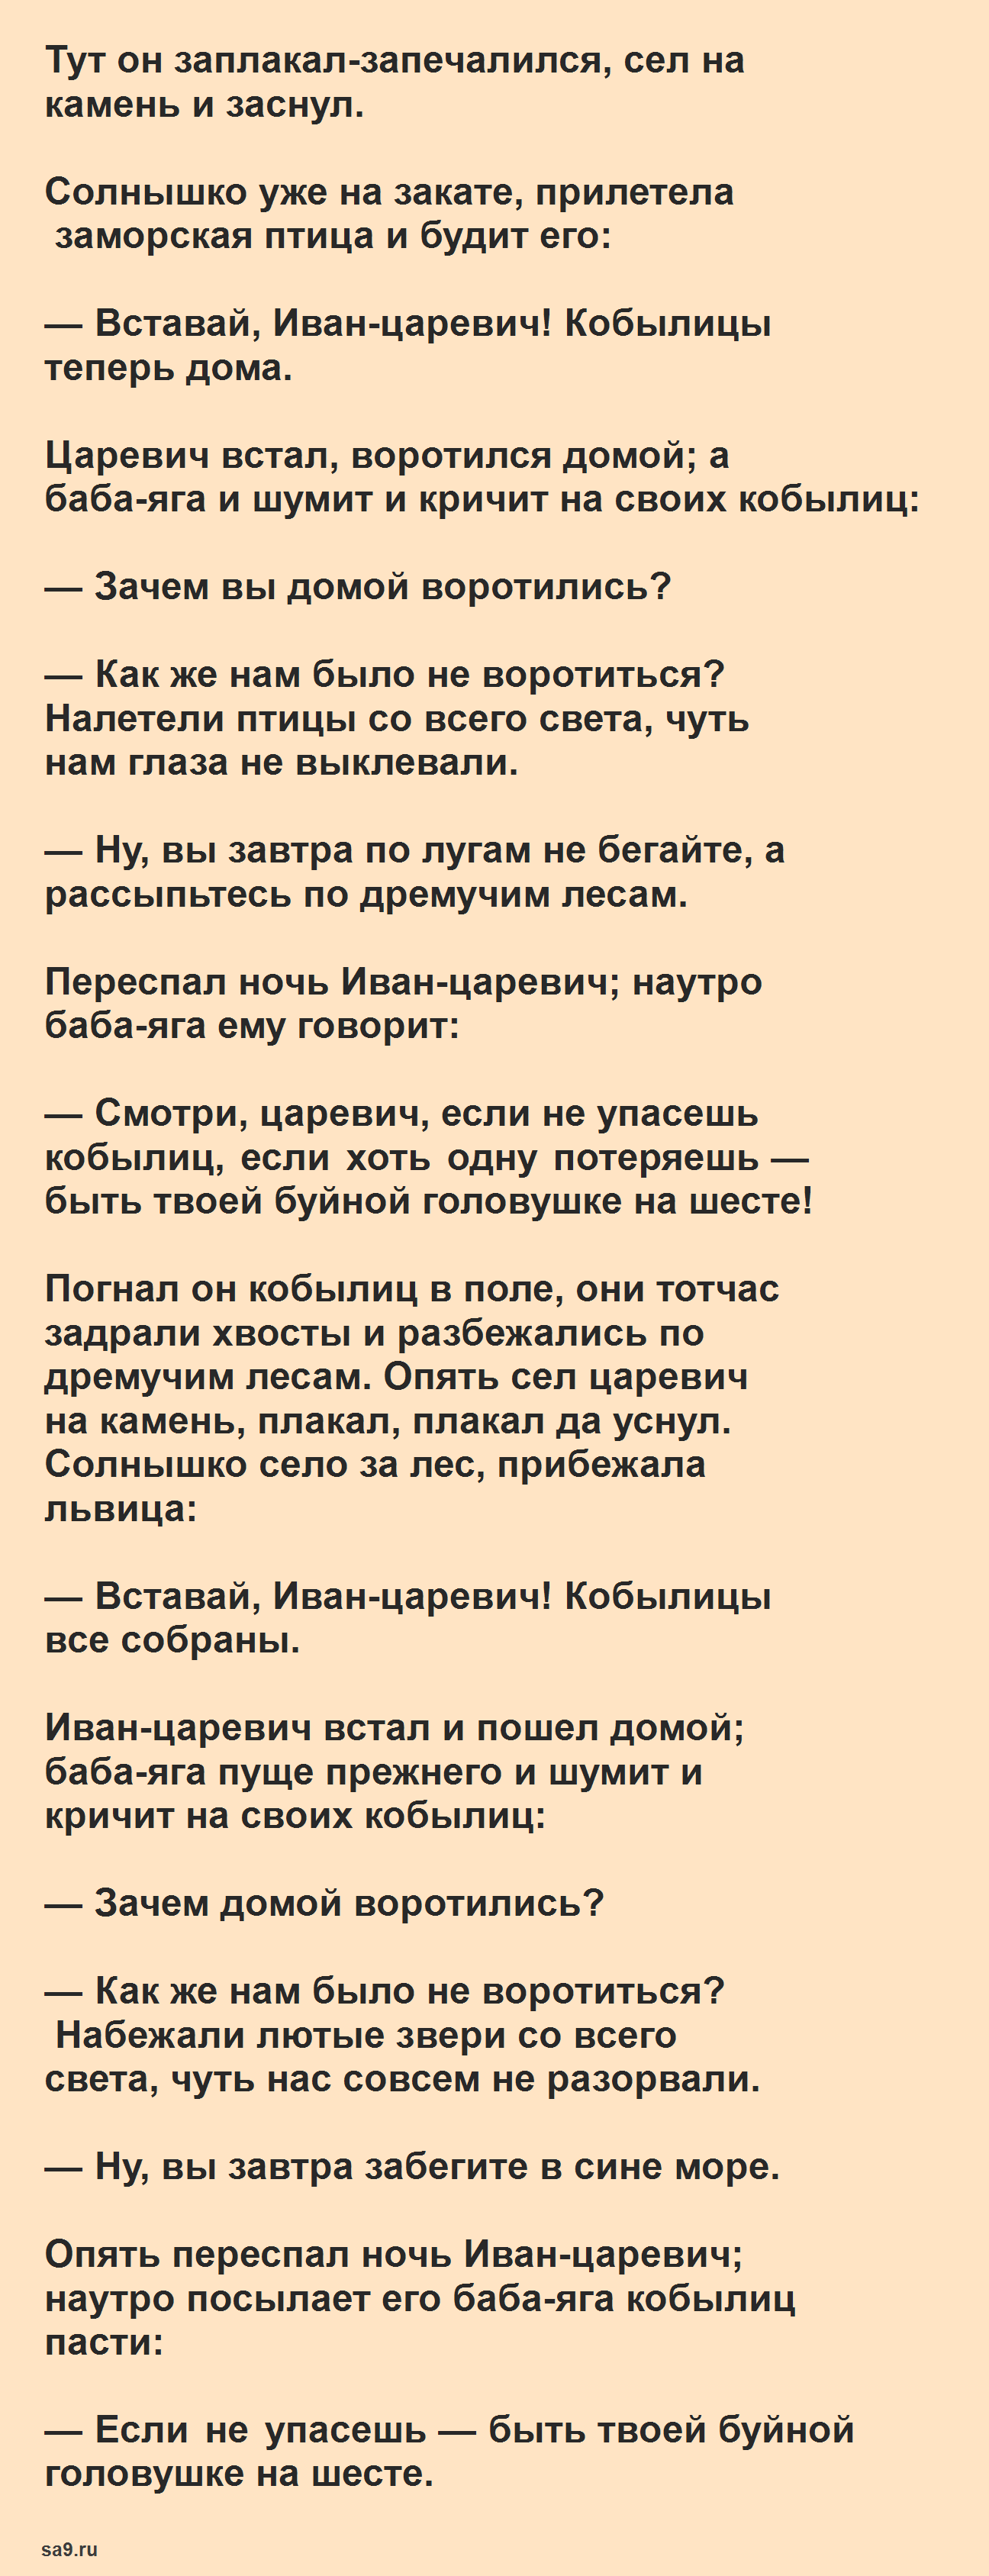 Марья Моревна - русская народная сказка, читать полностью